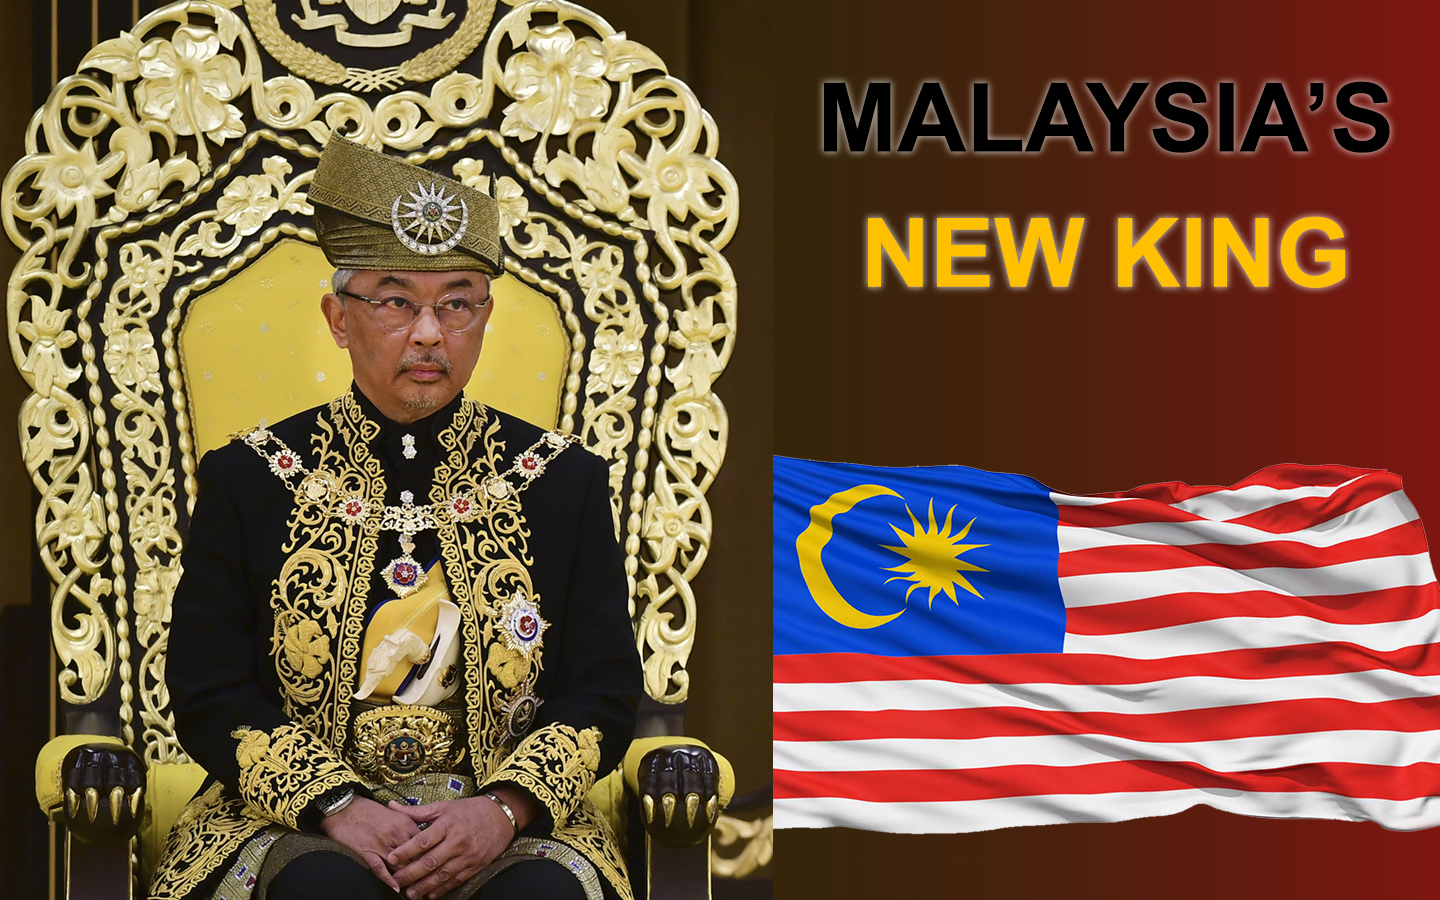 Malaysia's new King, Sultan Abdullah Ri’ayatuddin Al-Mustafa Billah Shah